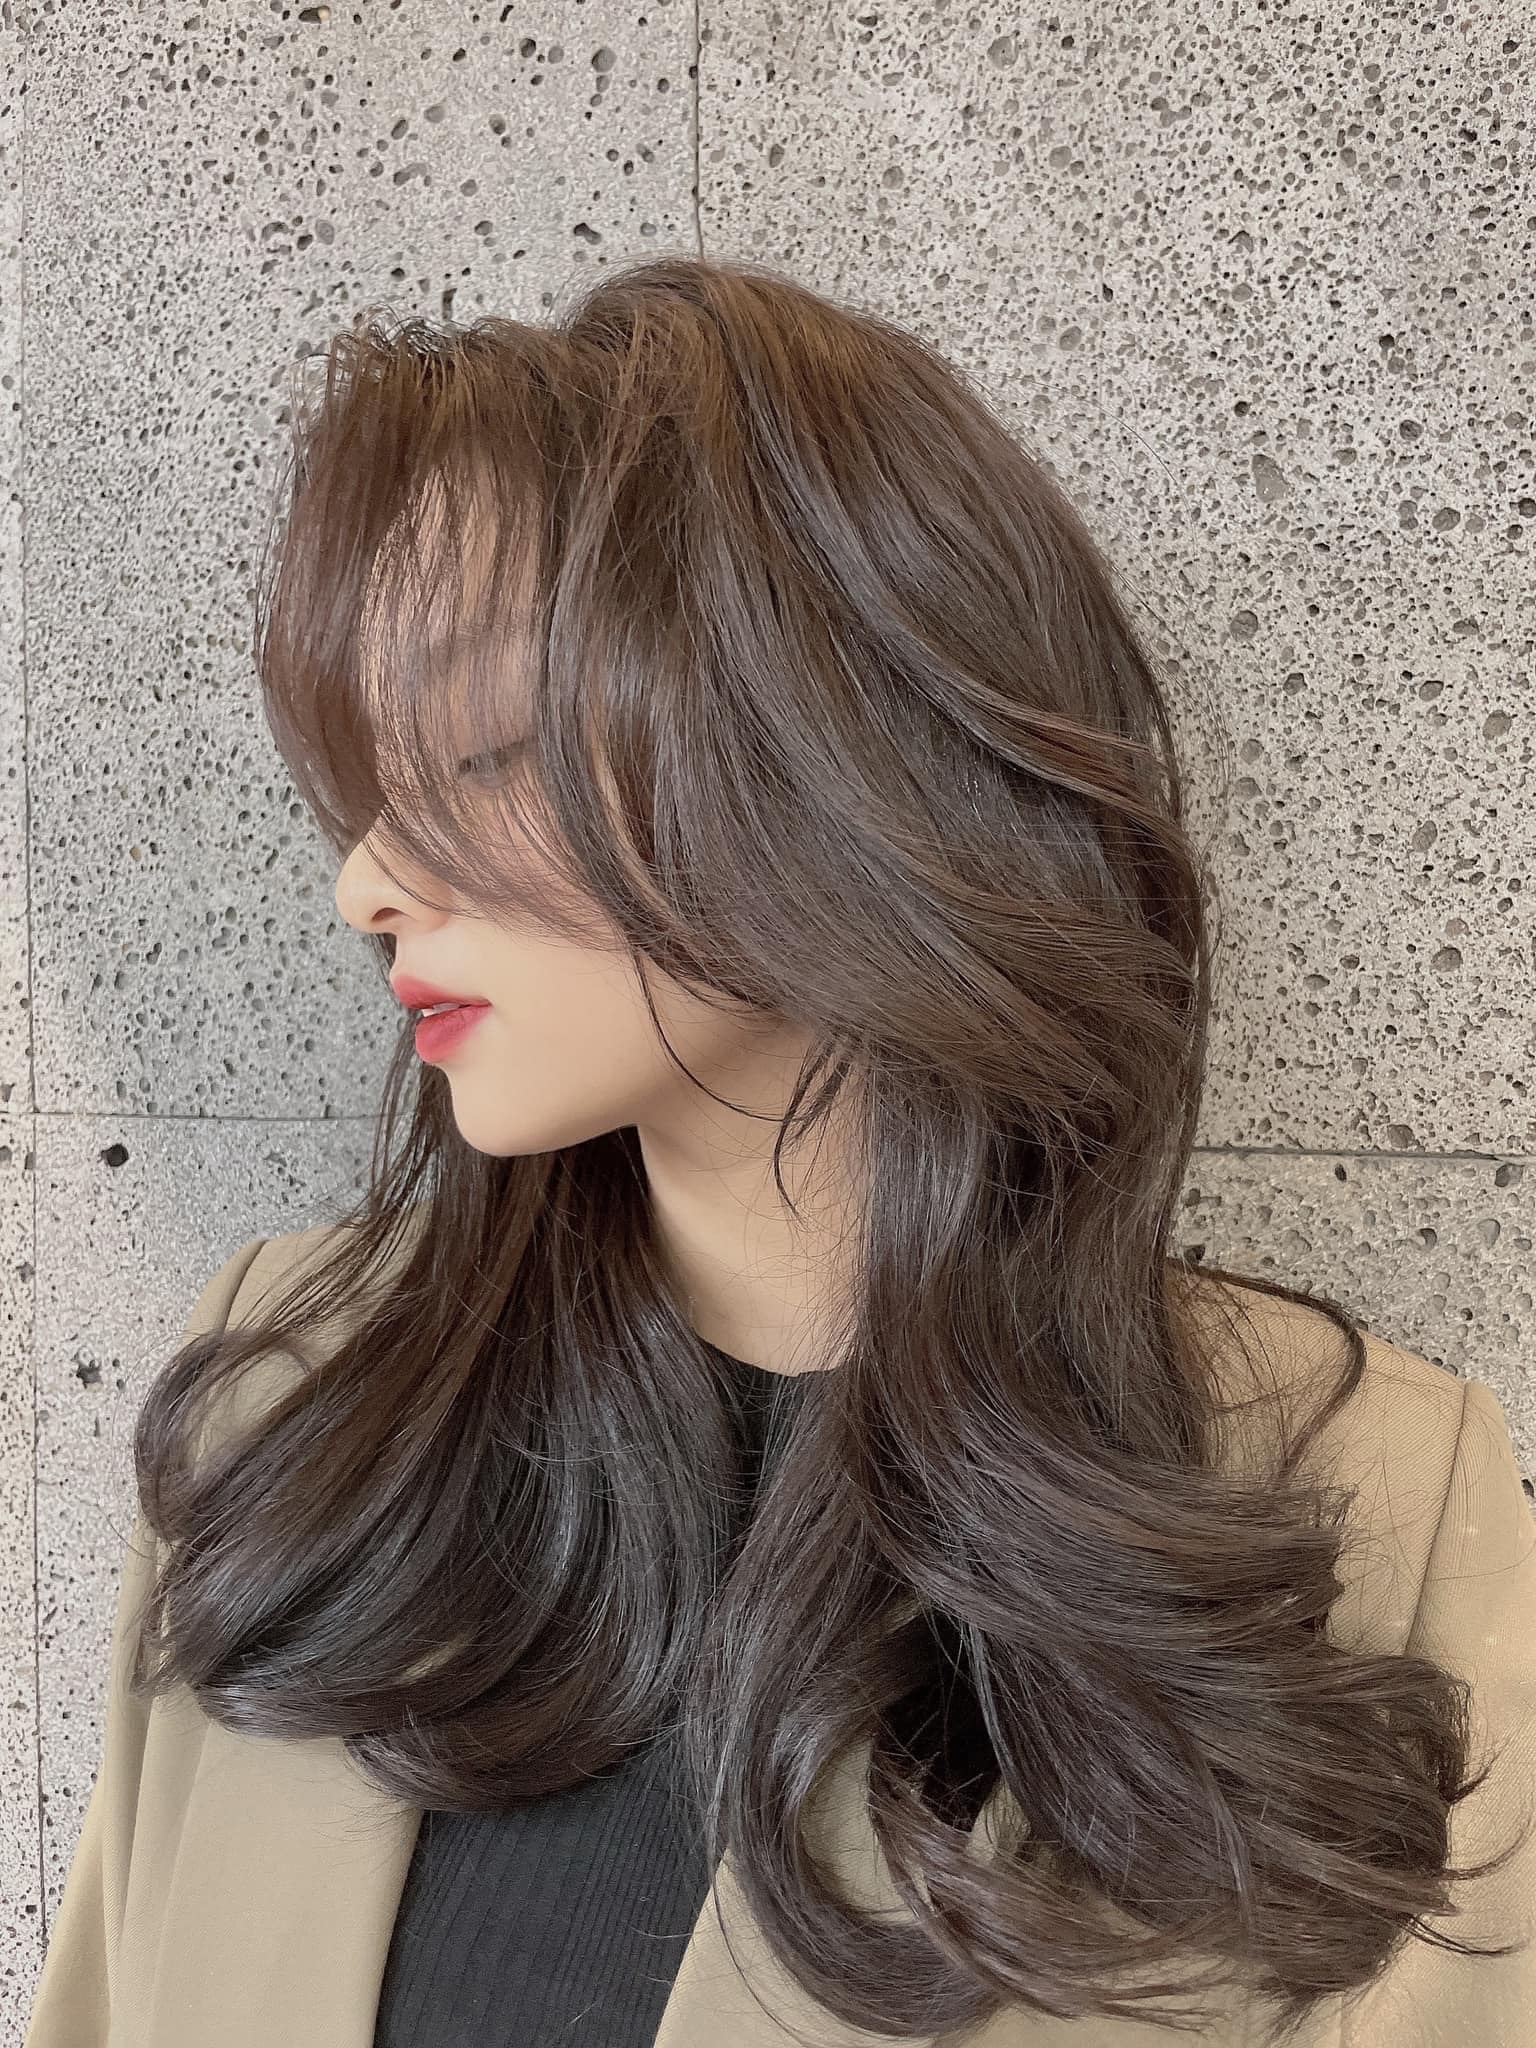 TREN 2022] Kiểu tóc xoăn lơi nhẹ nhàng chuẩn Styele gái Hàn